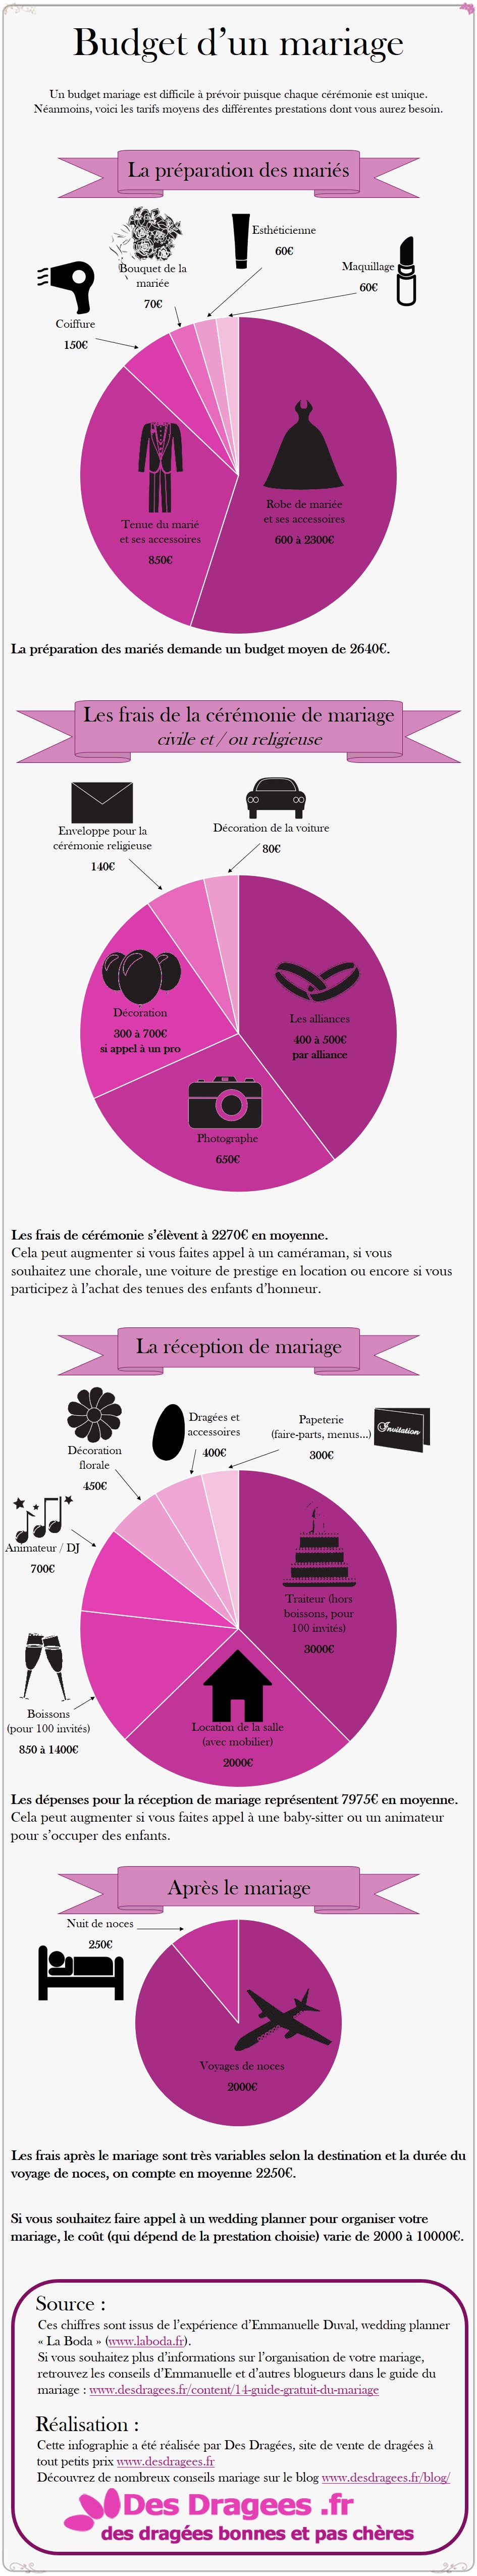 Infographie sur le budget d'un mariage